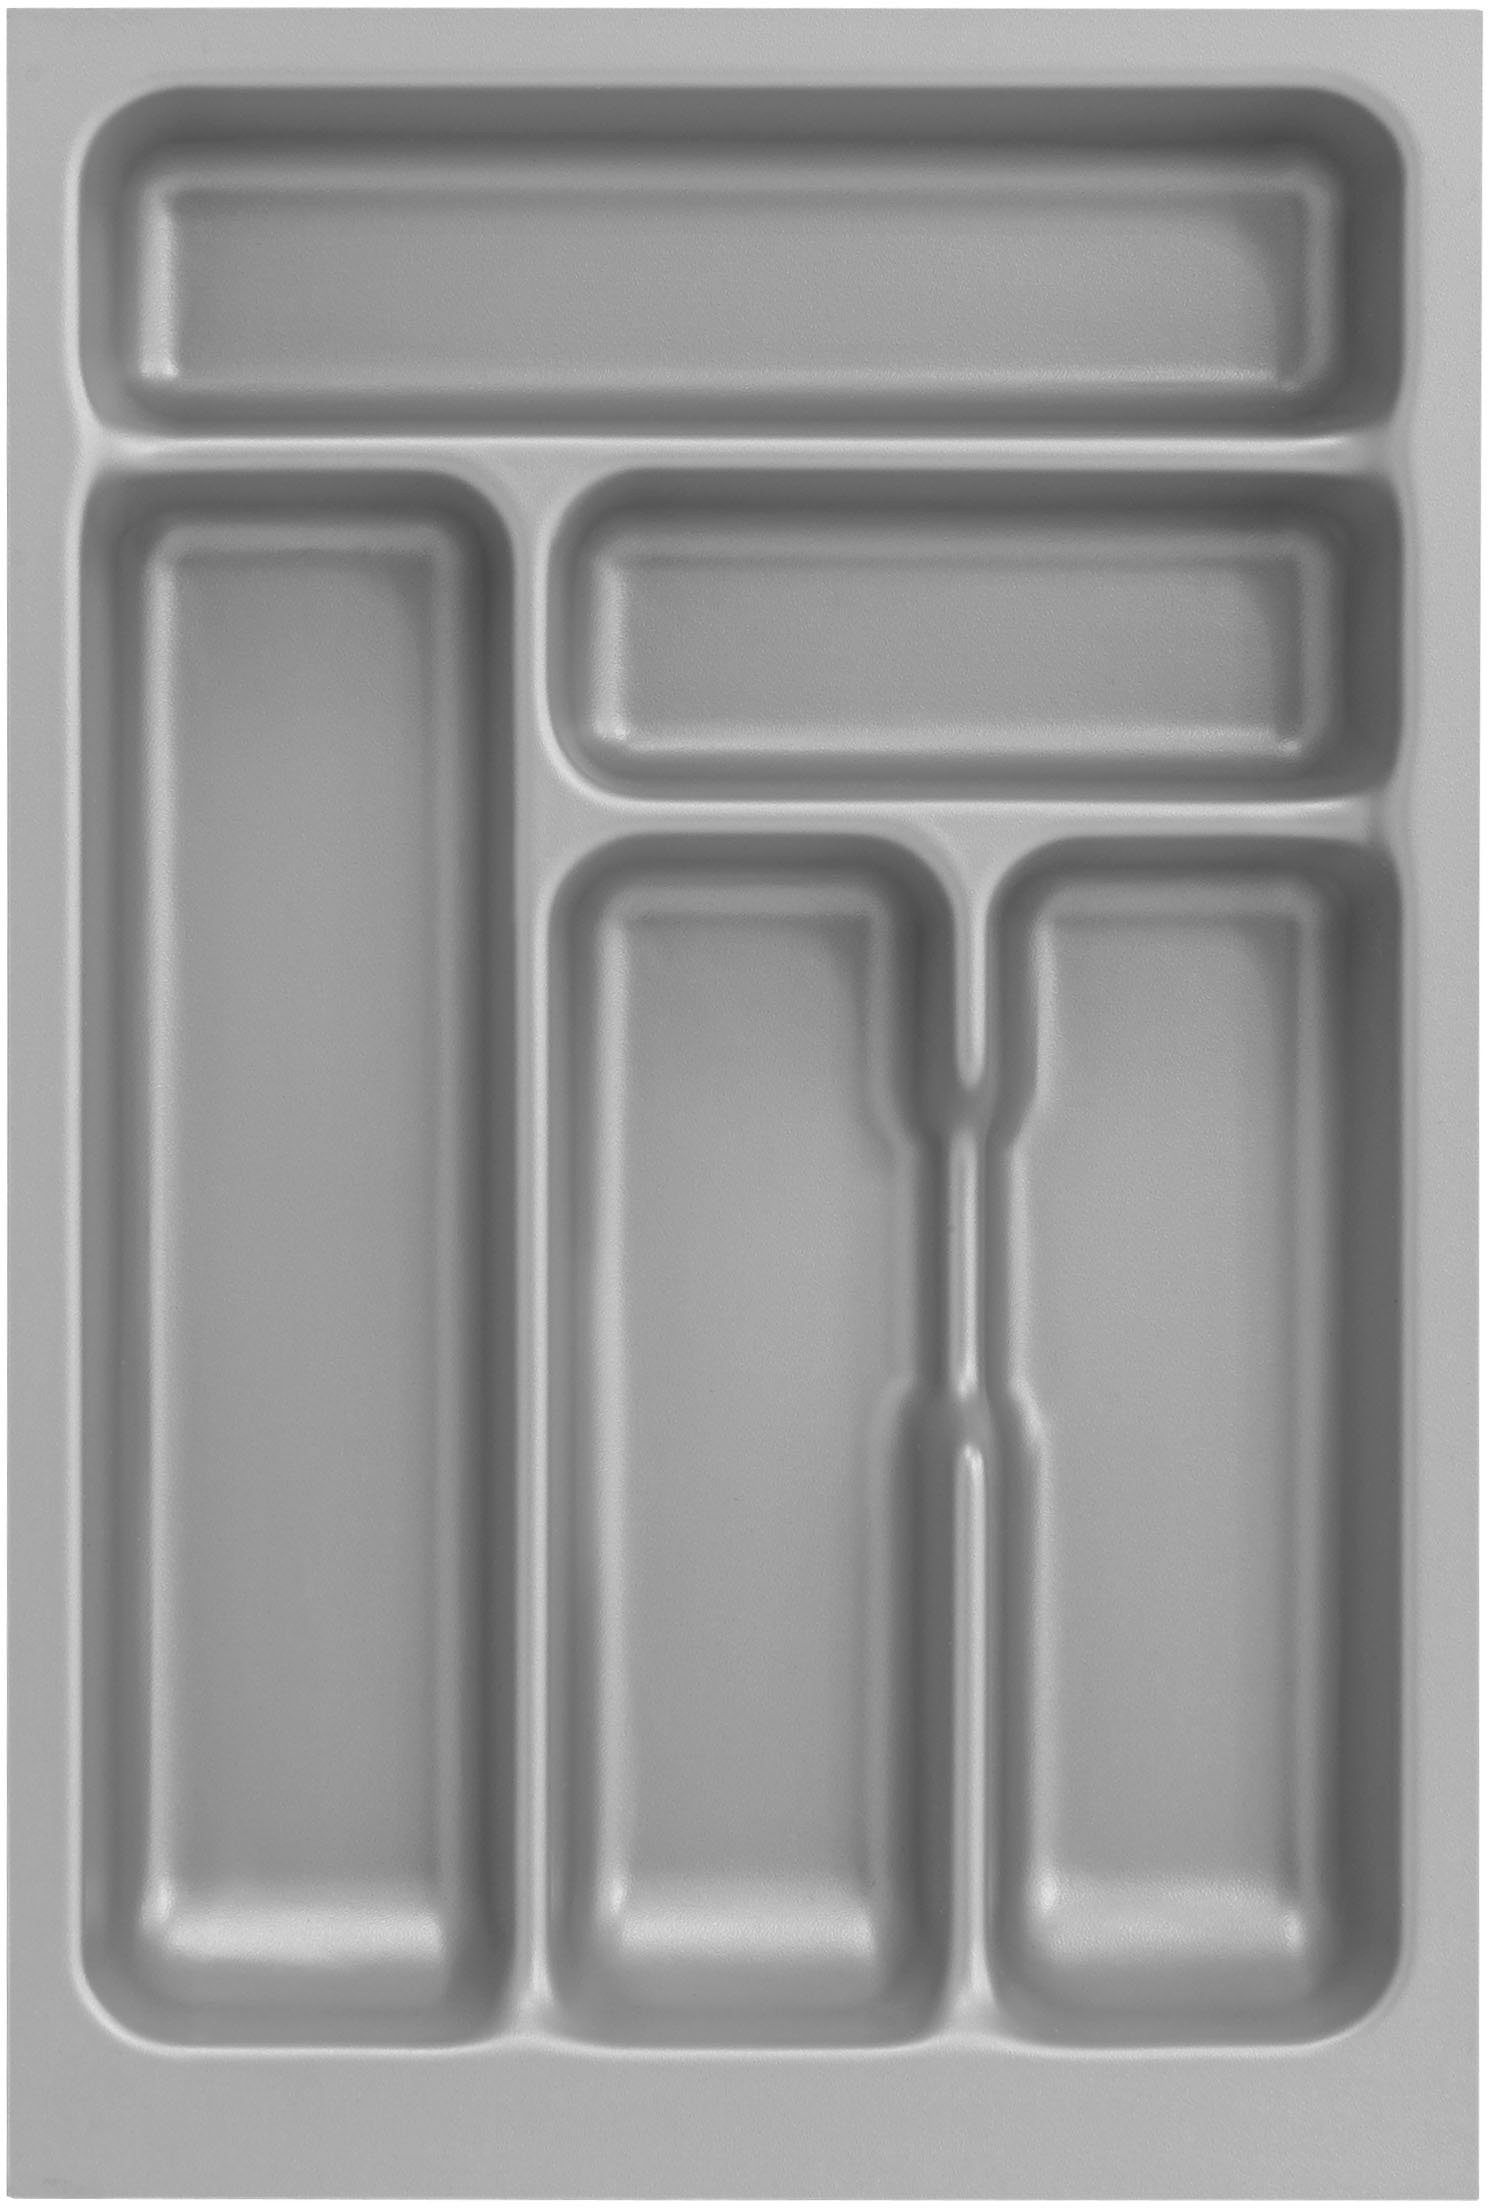 OPTIFIT wildeiche/wildeiche wildeiche mit oder wahlweise | Küche Safeli, cm, 210 ohne Breite Hanseatic-E-Geräte